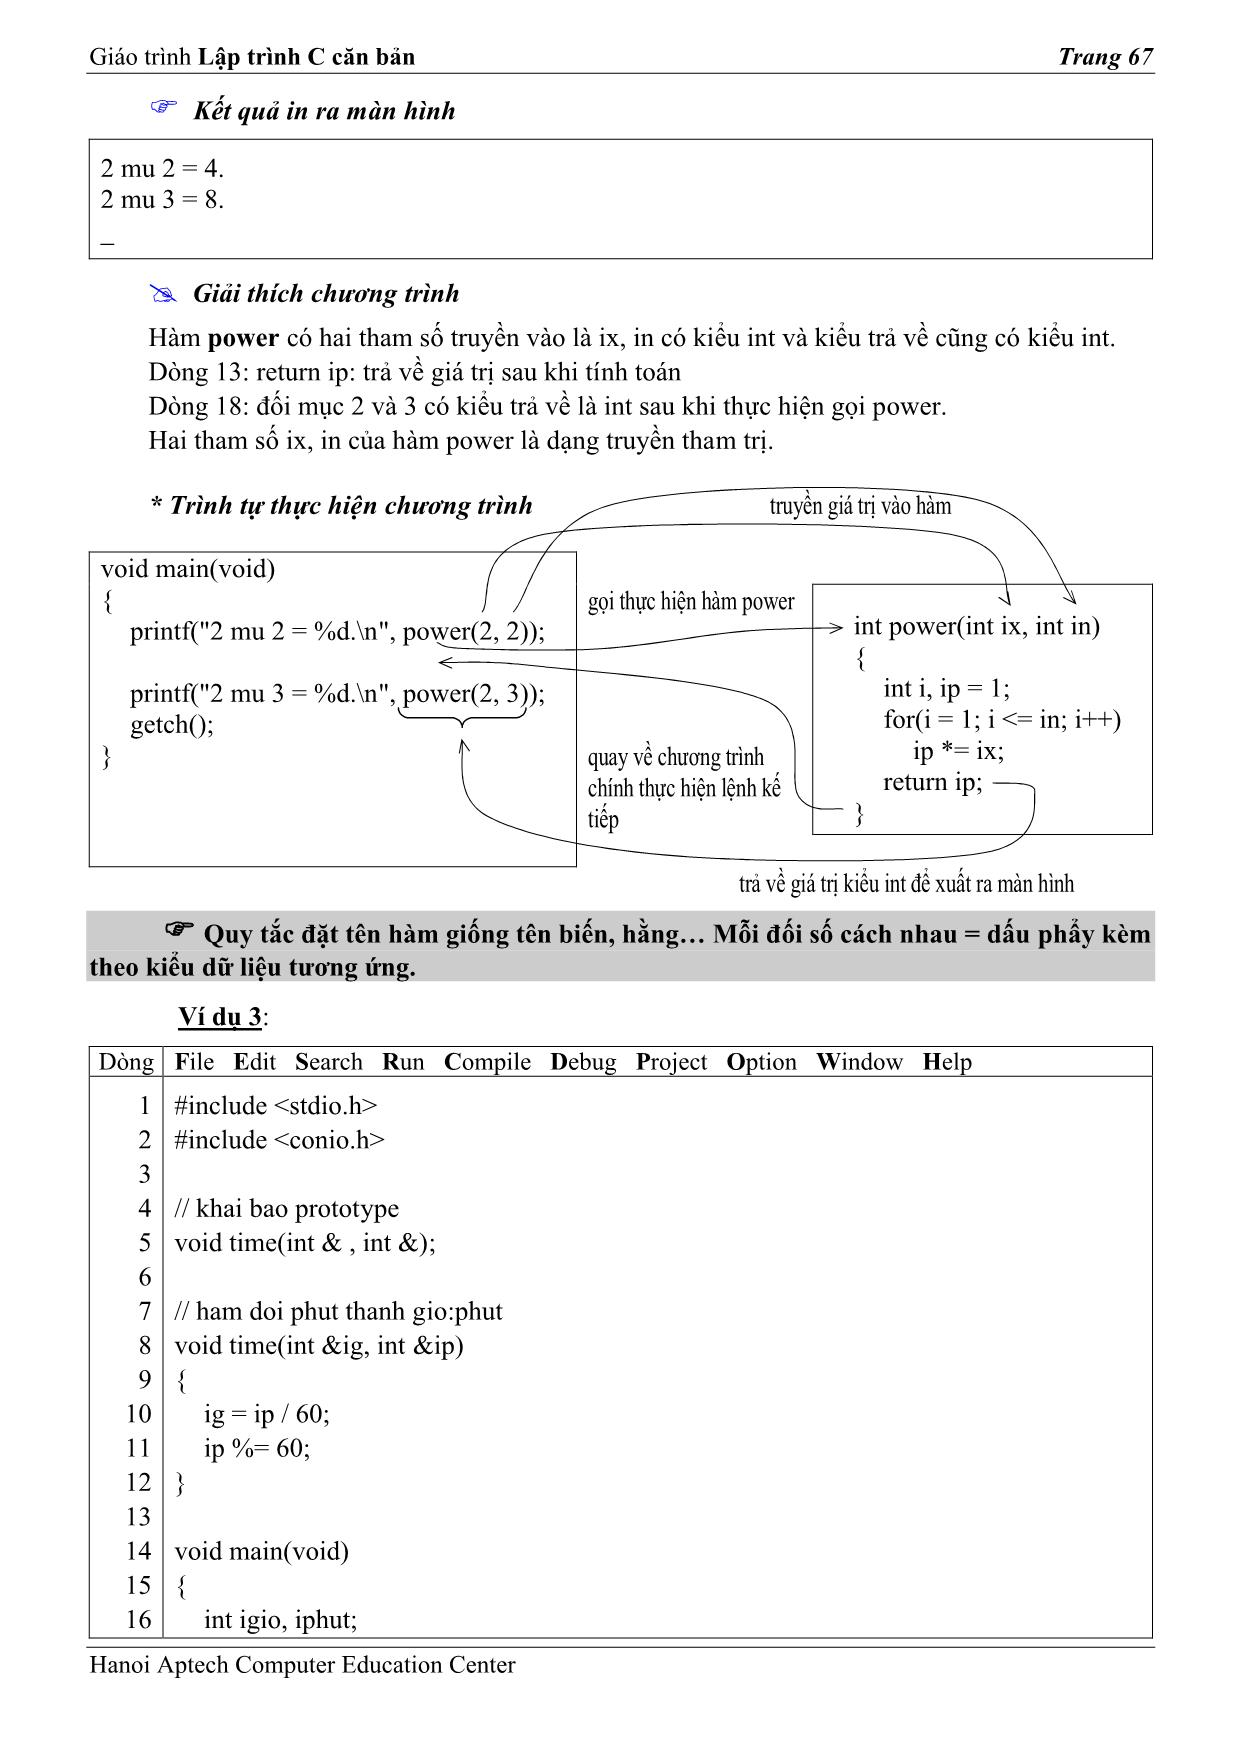 Giáo trình Lập trình C căn bản (Phần 2) trang 3